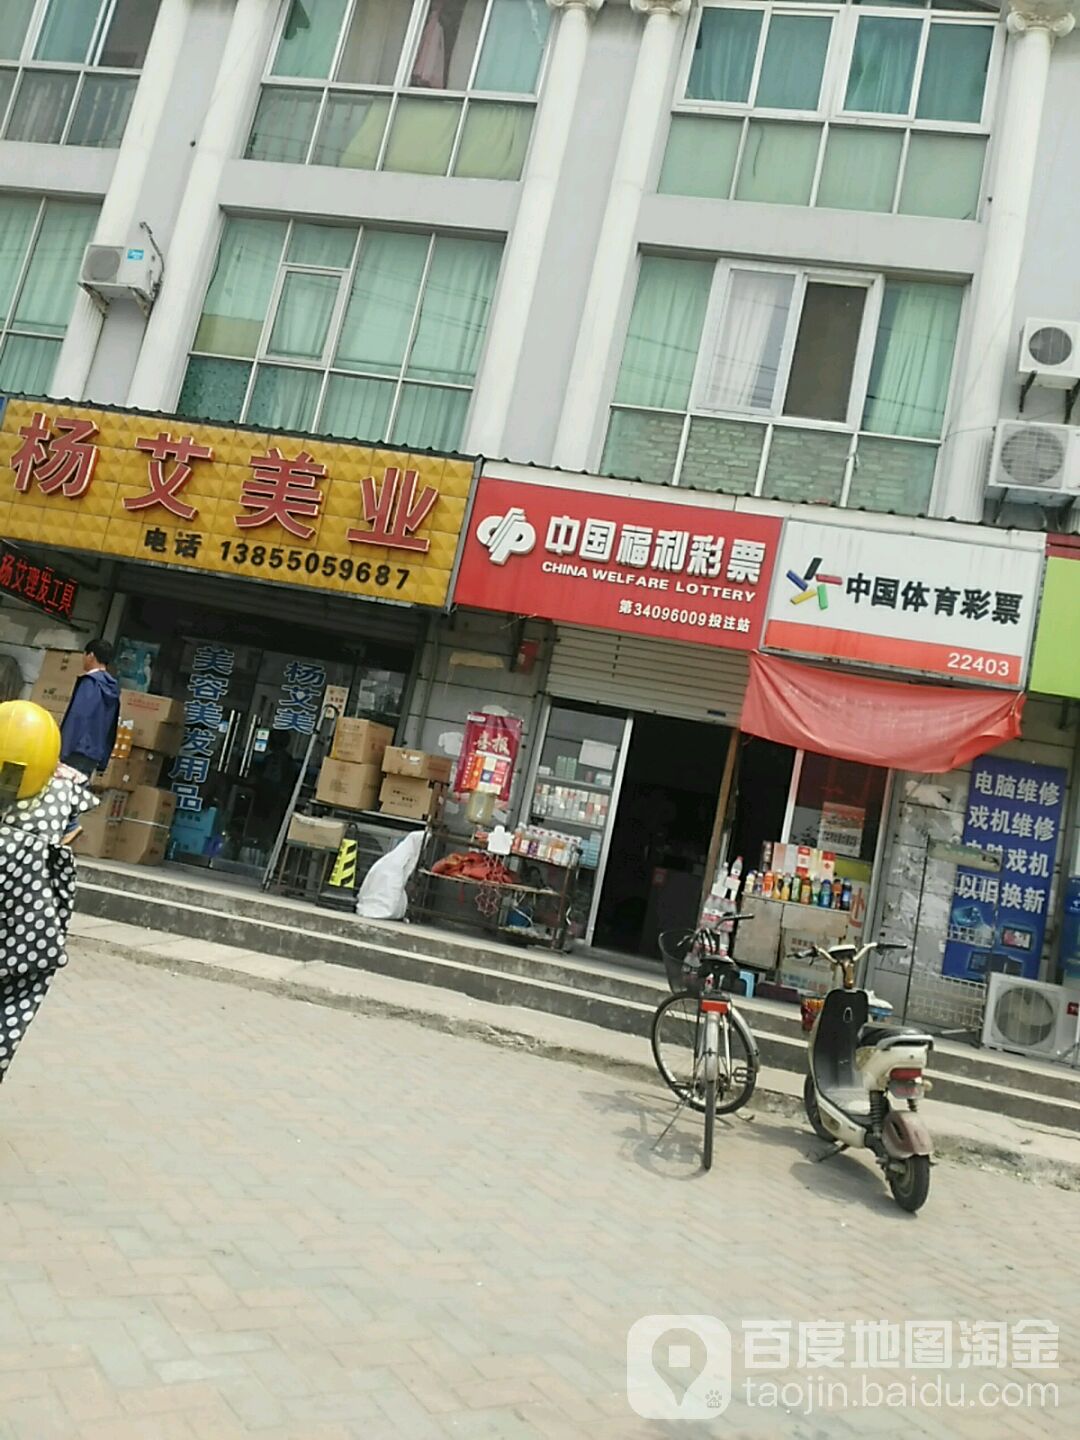 中国体育彩票(池河大道店)